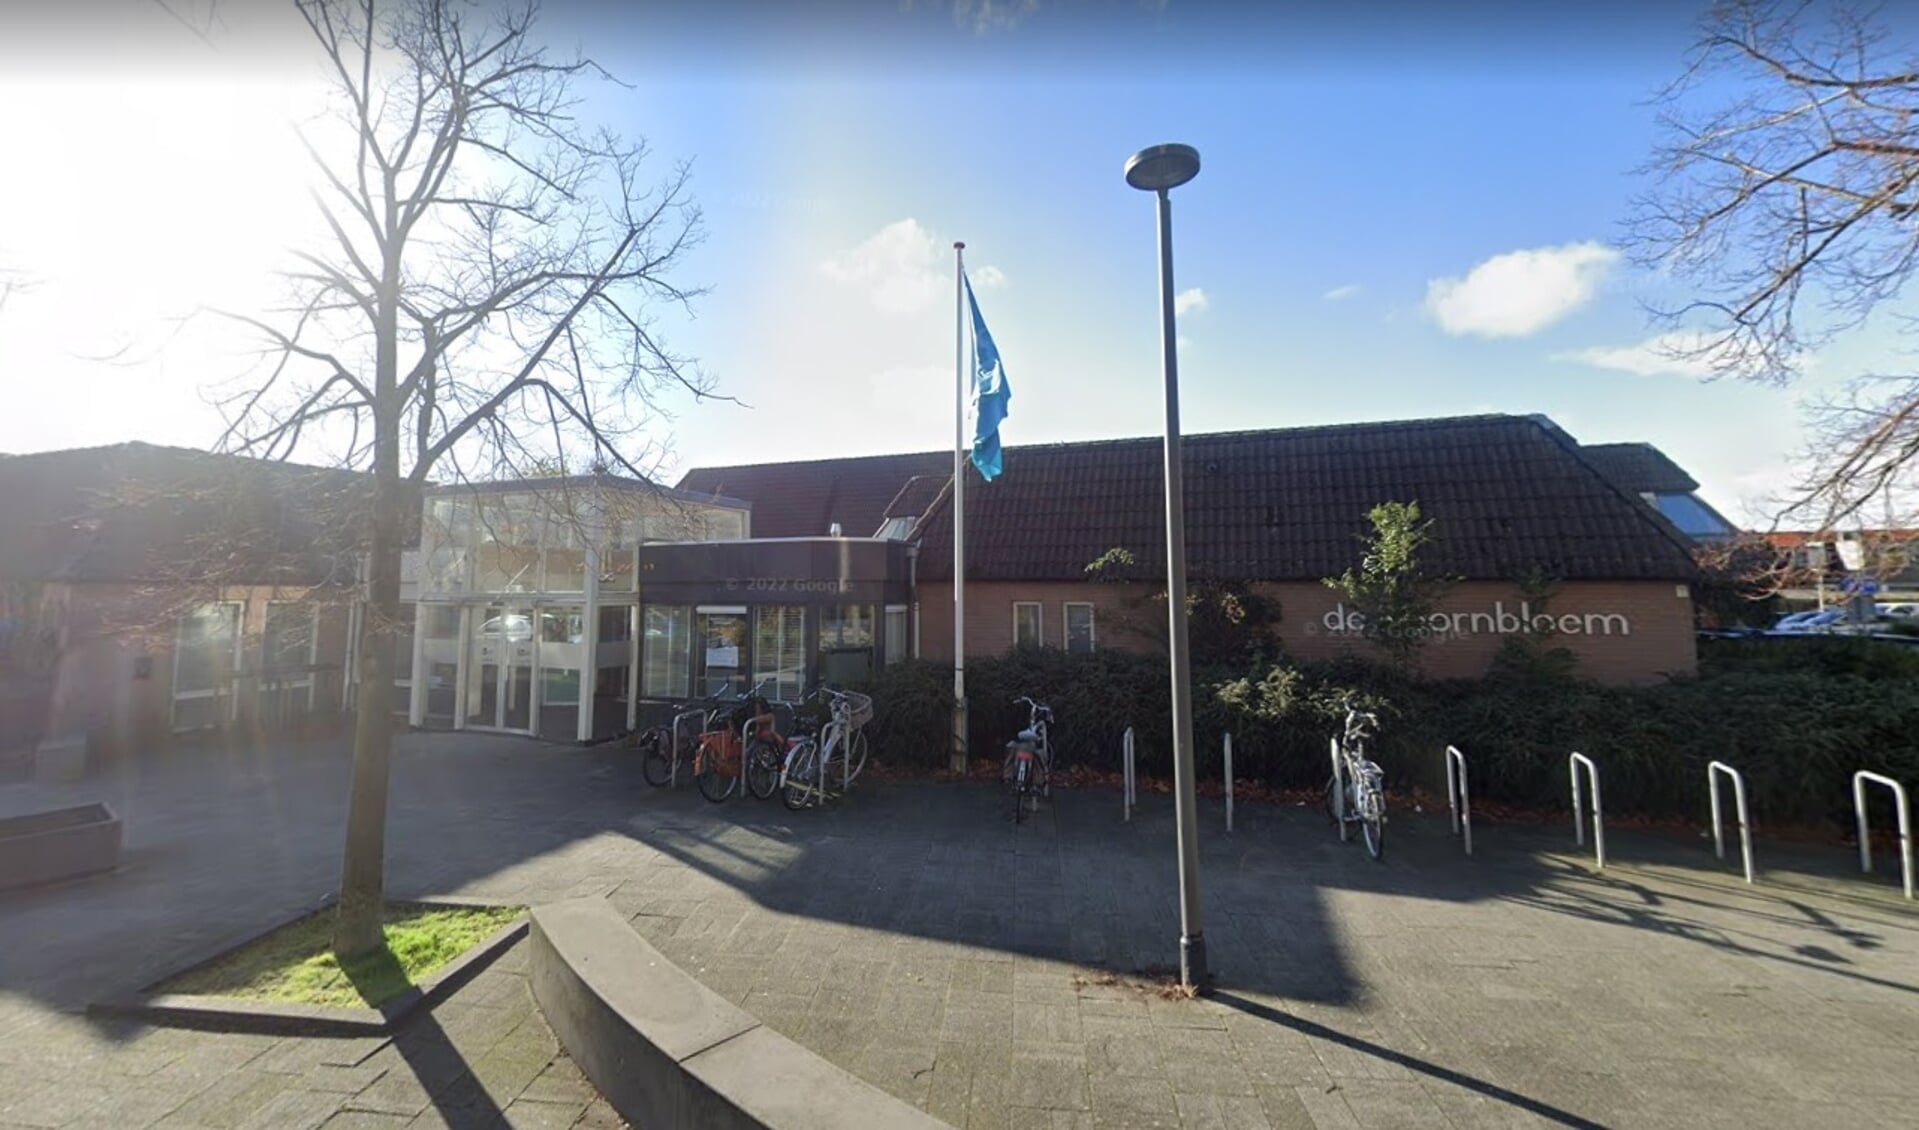 De Hoornbloem in Den Hoorn is een van de locaties waar in Midden-Delfland gestemd kan worden.